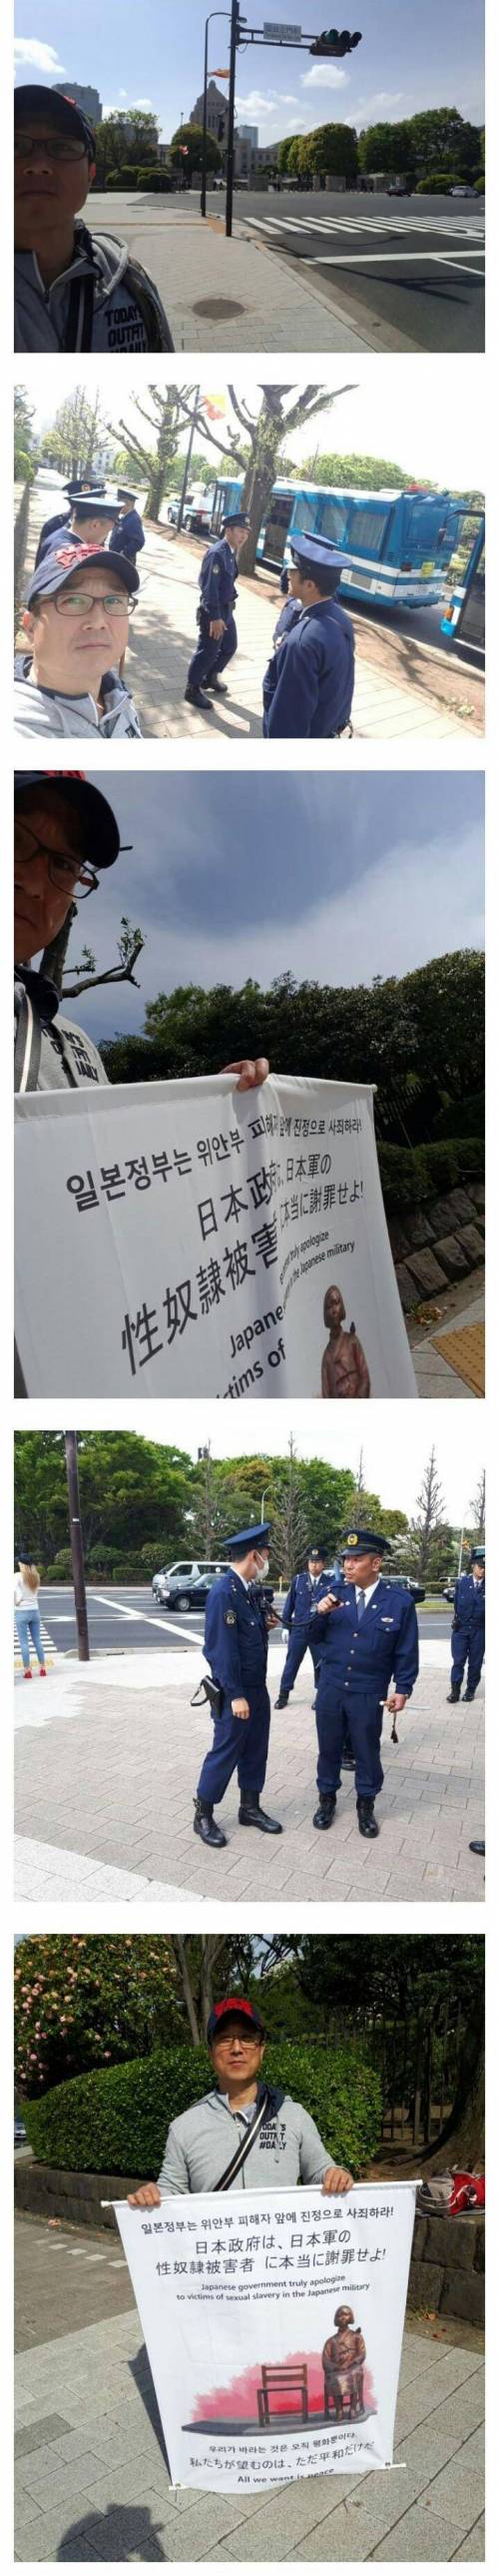 일본에서 1인 시위중인 한국인..jpg